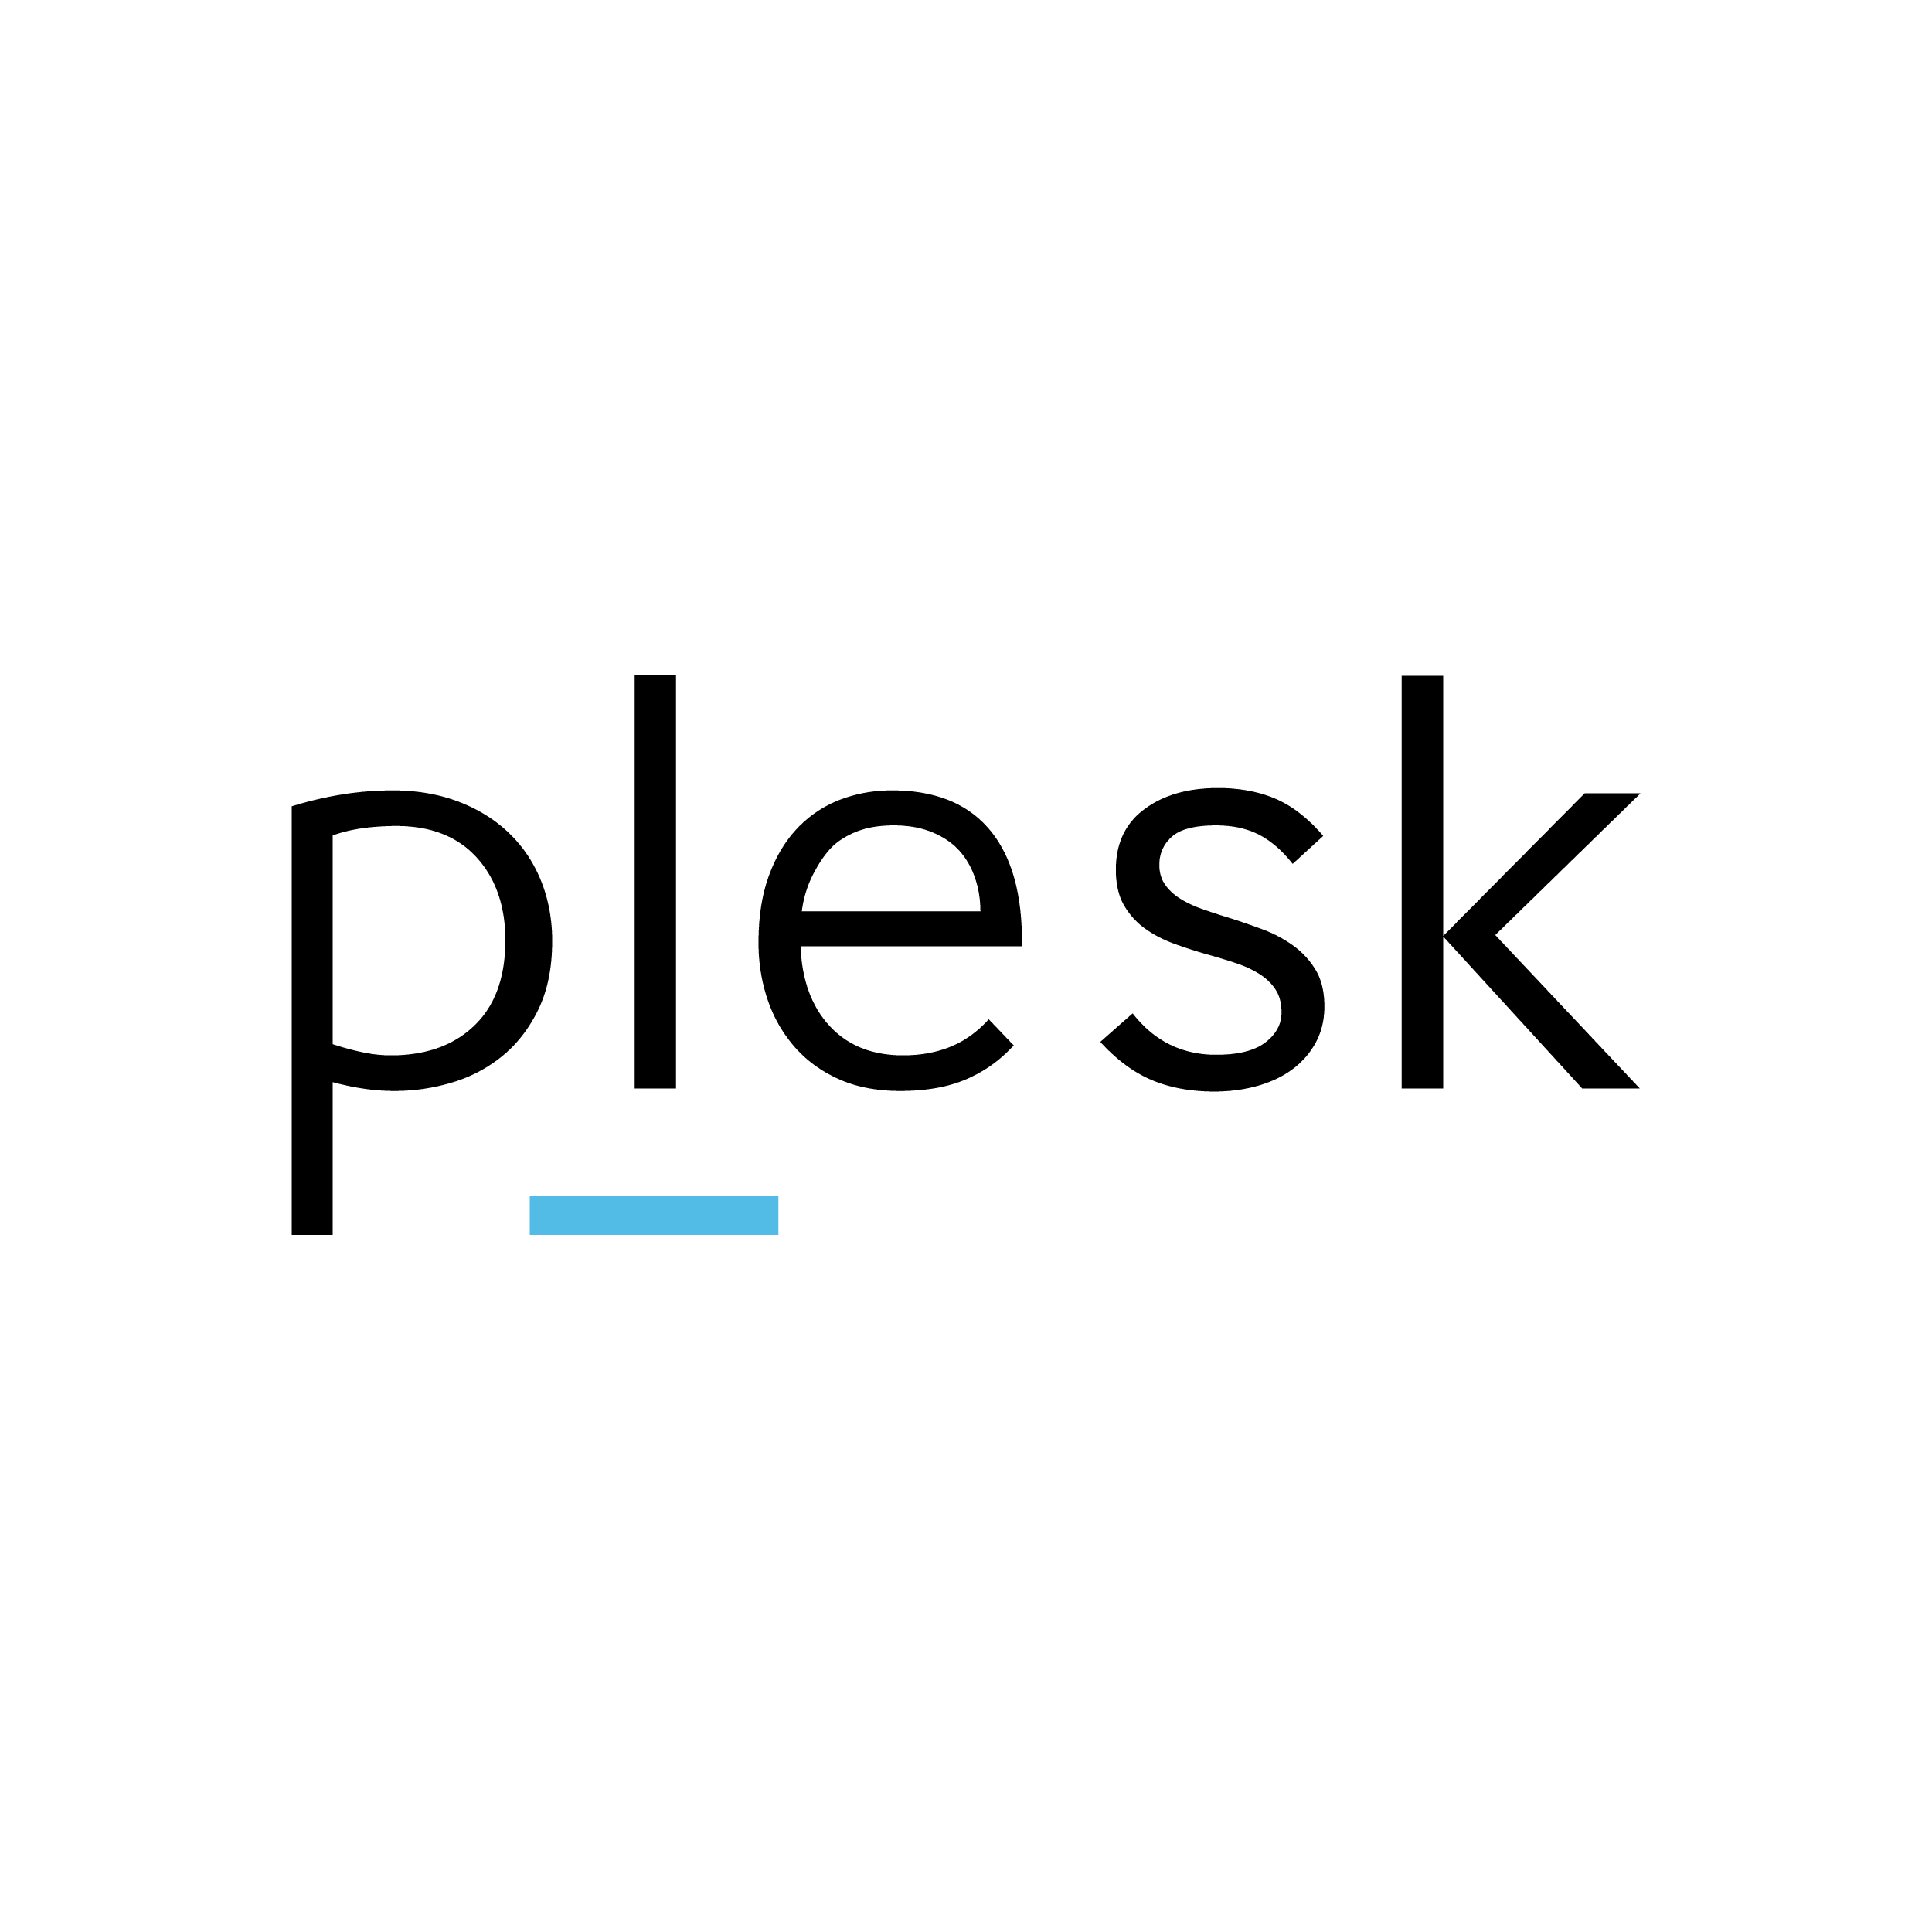 Logo von Plesk